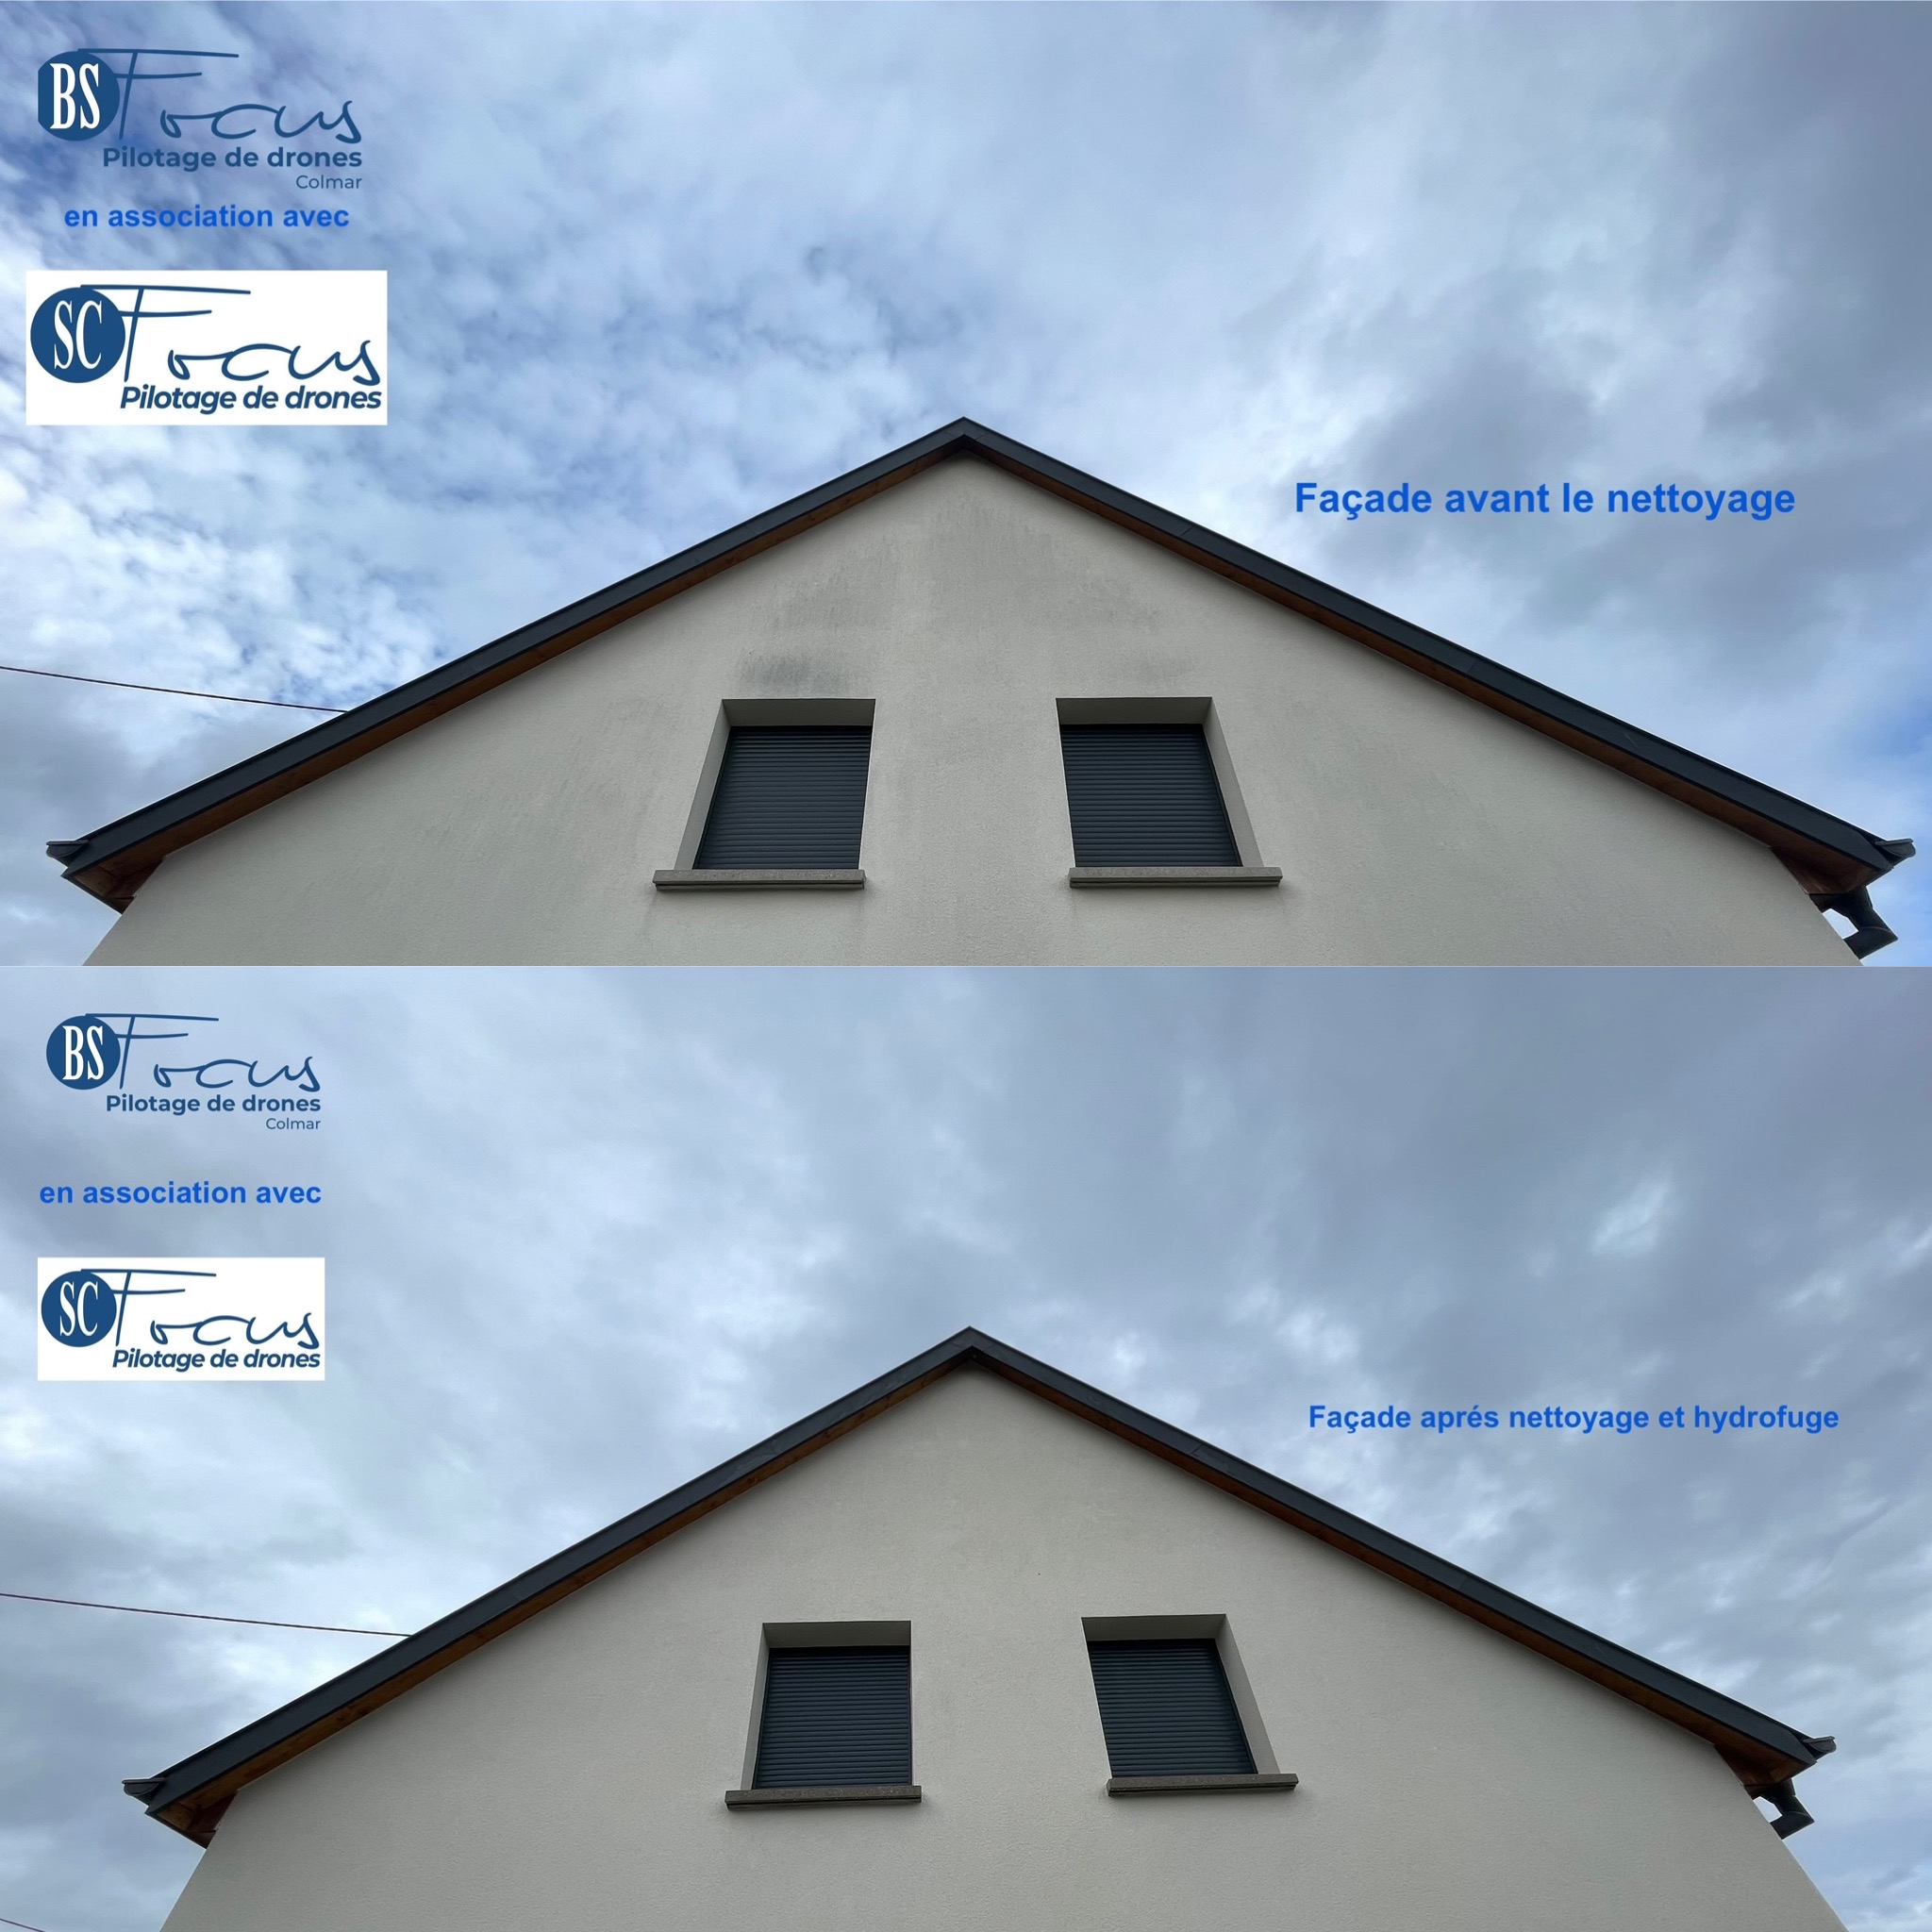 La transformation éclatante : Avant et après le nettoyage et l'application de l'hydrofuge sur une façade